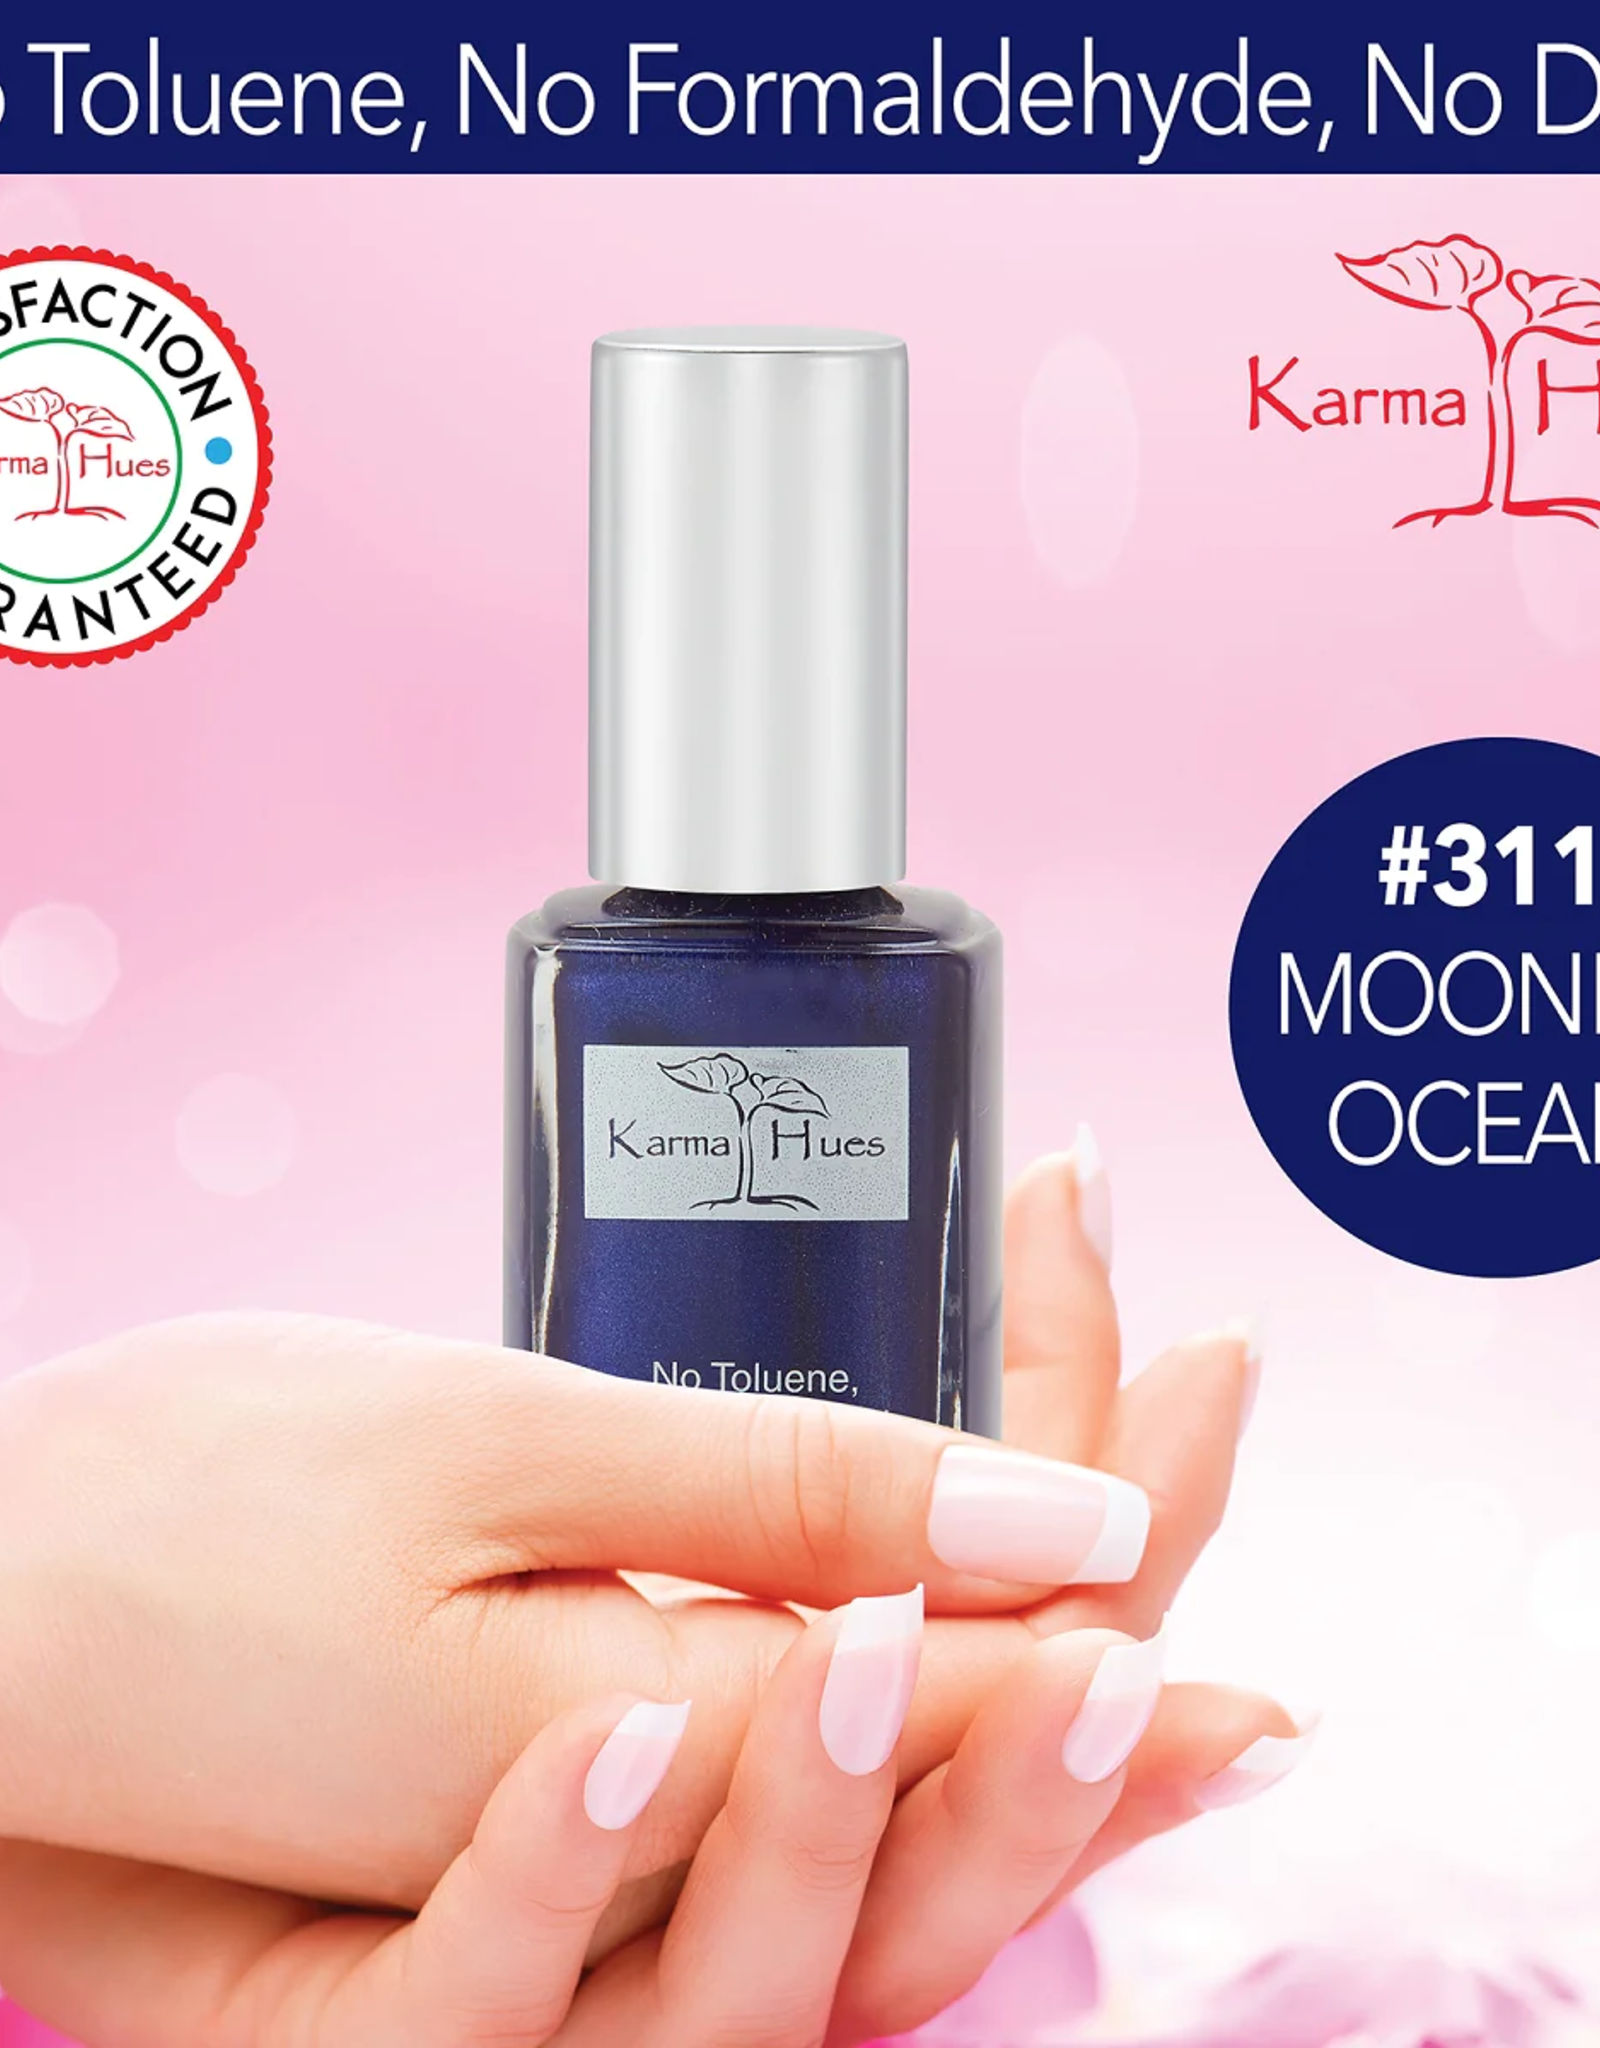 Karma Organics Moonlit Ocean